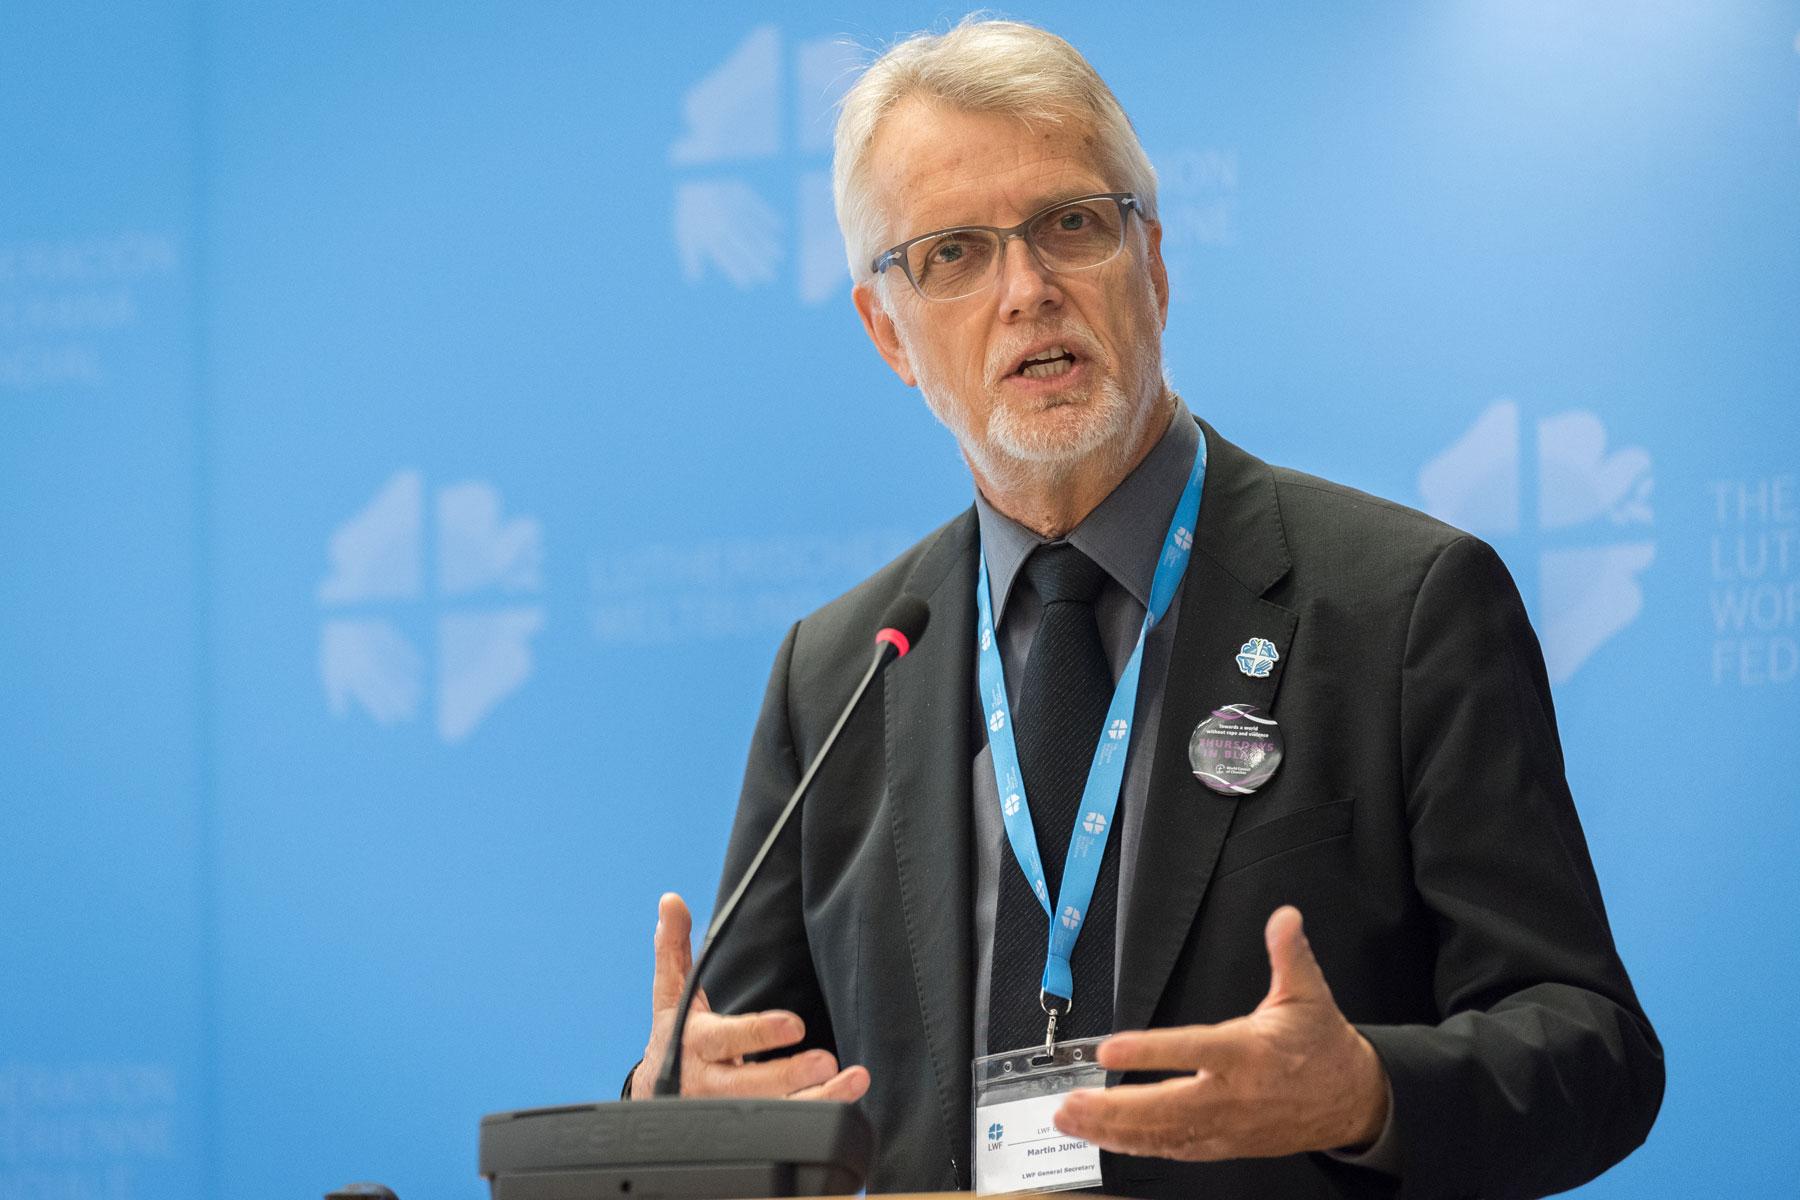 LWB-Generalsekretär Martin Junge legt dem LWB-Rat auf seiner Tagung 2019 seinen Bericht vor. Foto: LWB/Albin Hillert